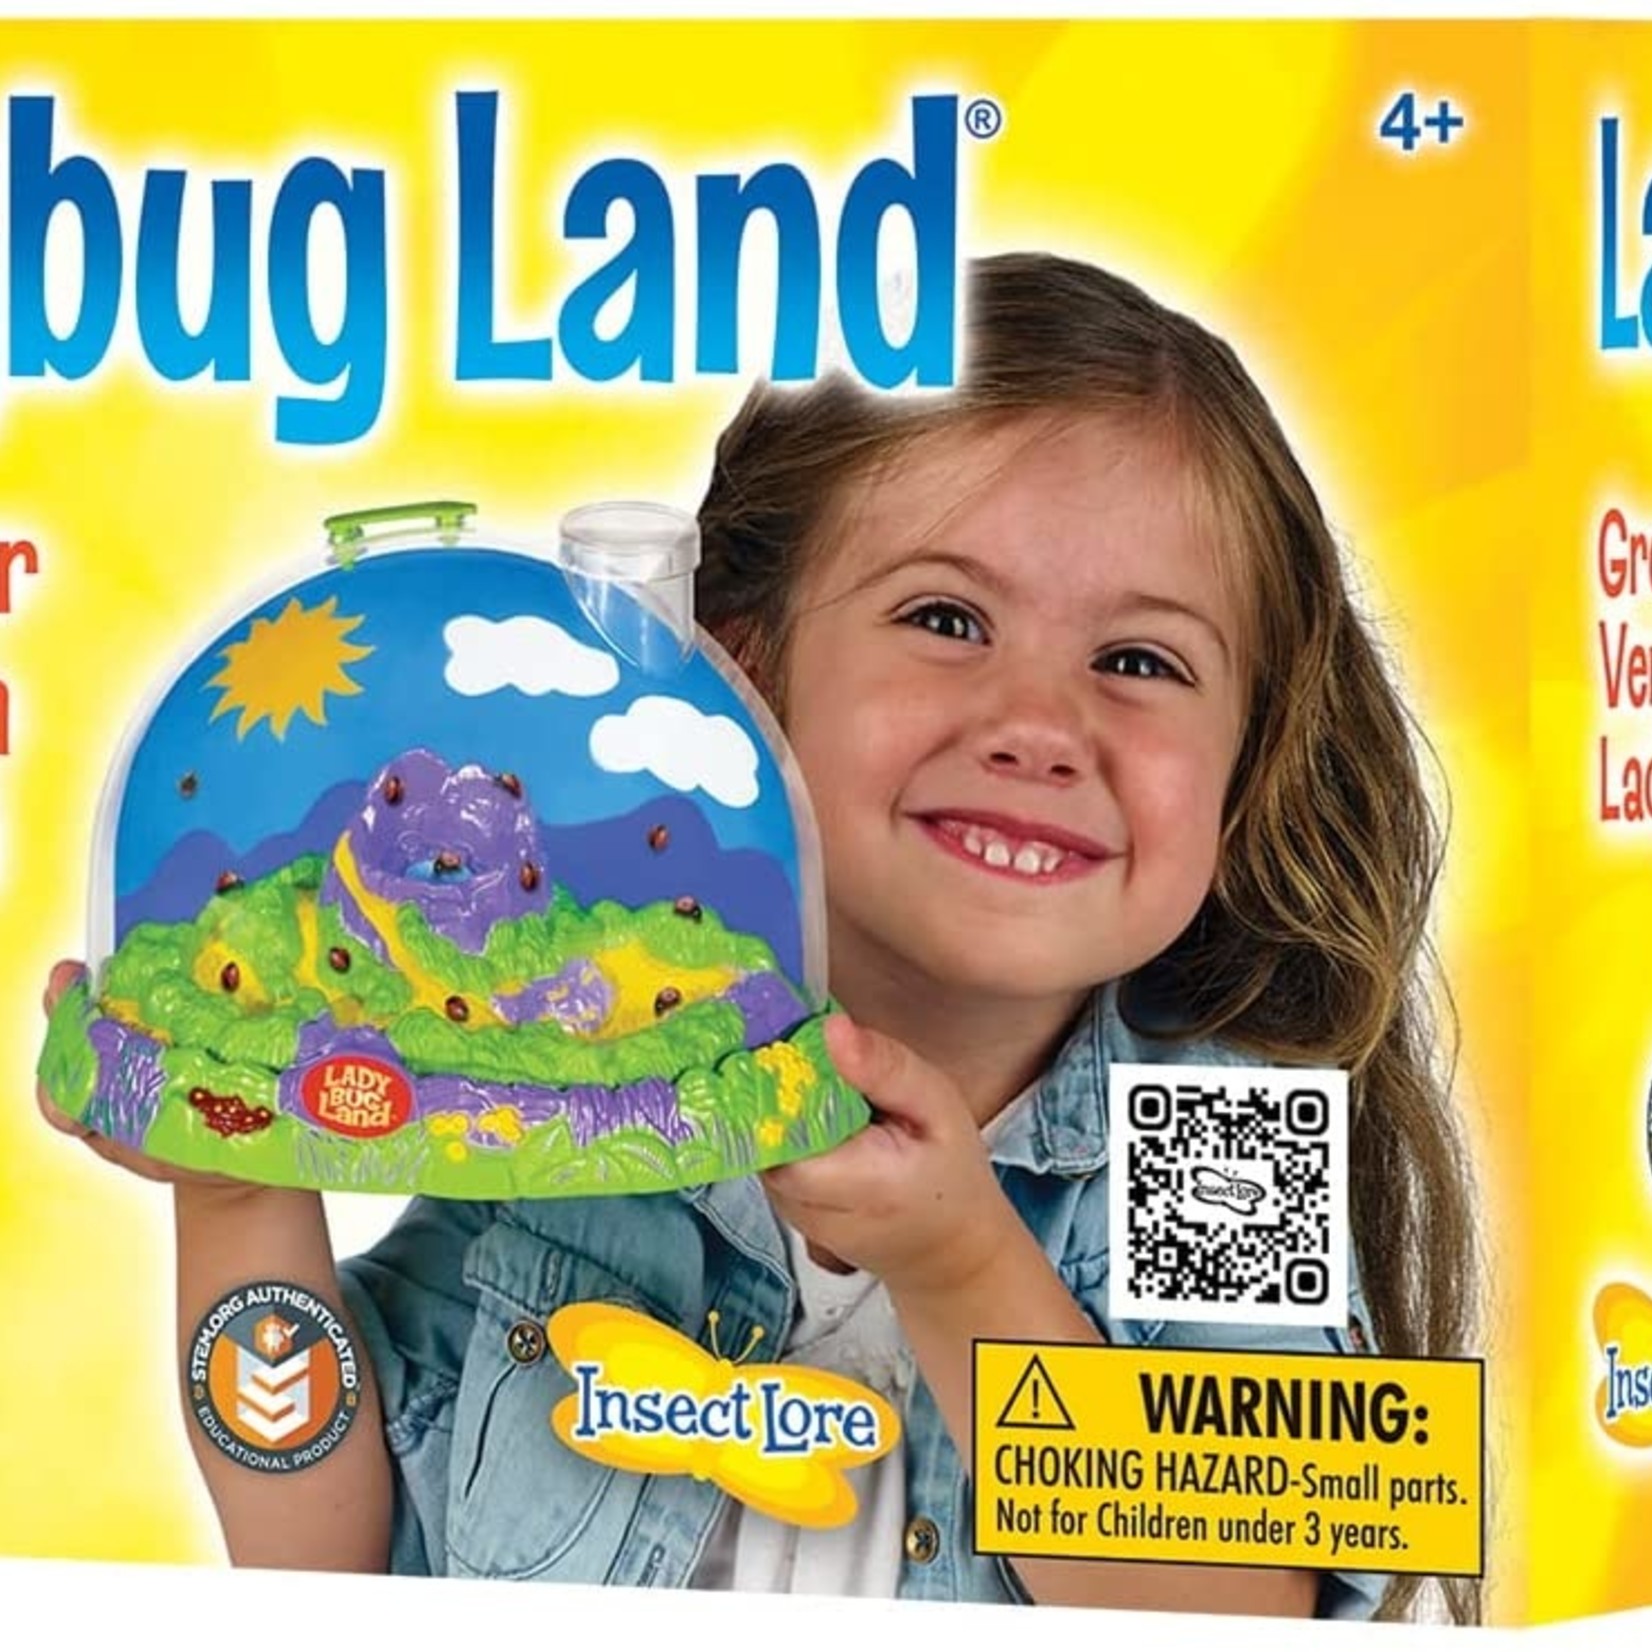 Ladybug Land